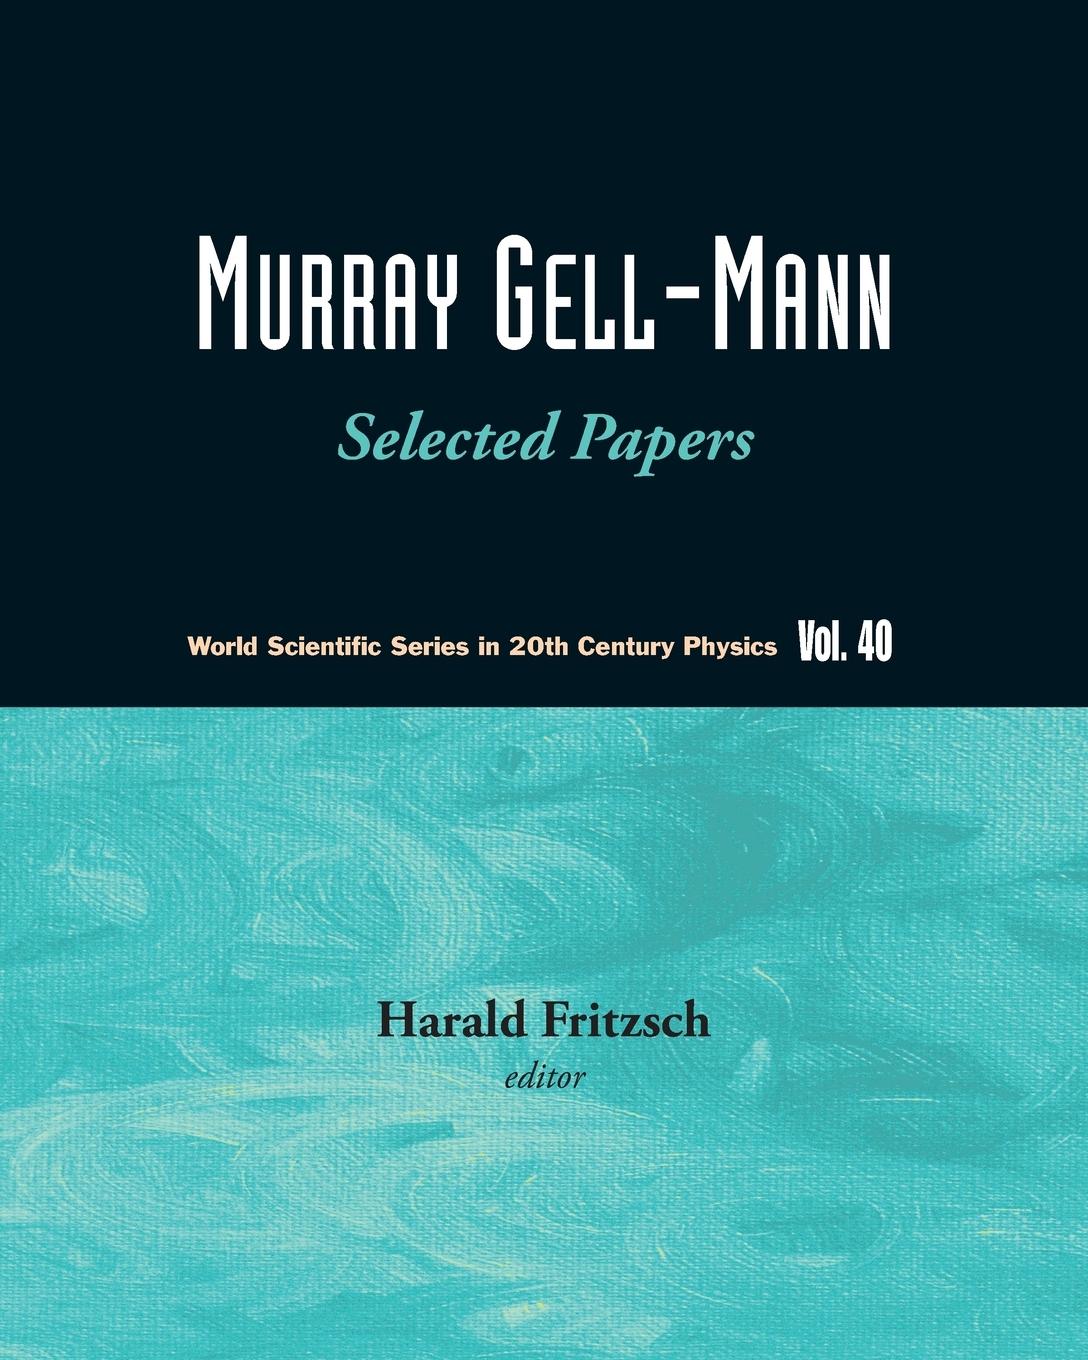 Murray Gell-Mann - Harald, Fritzsch